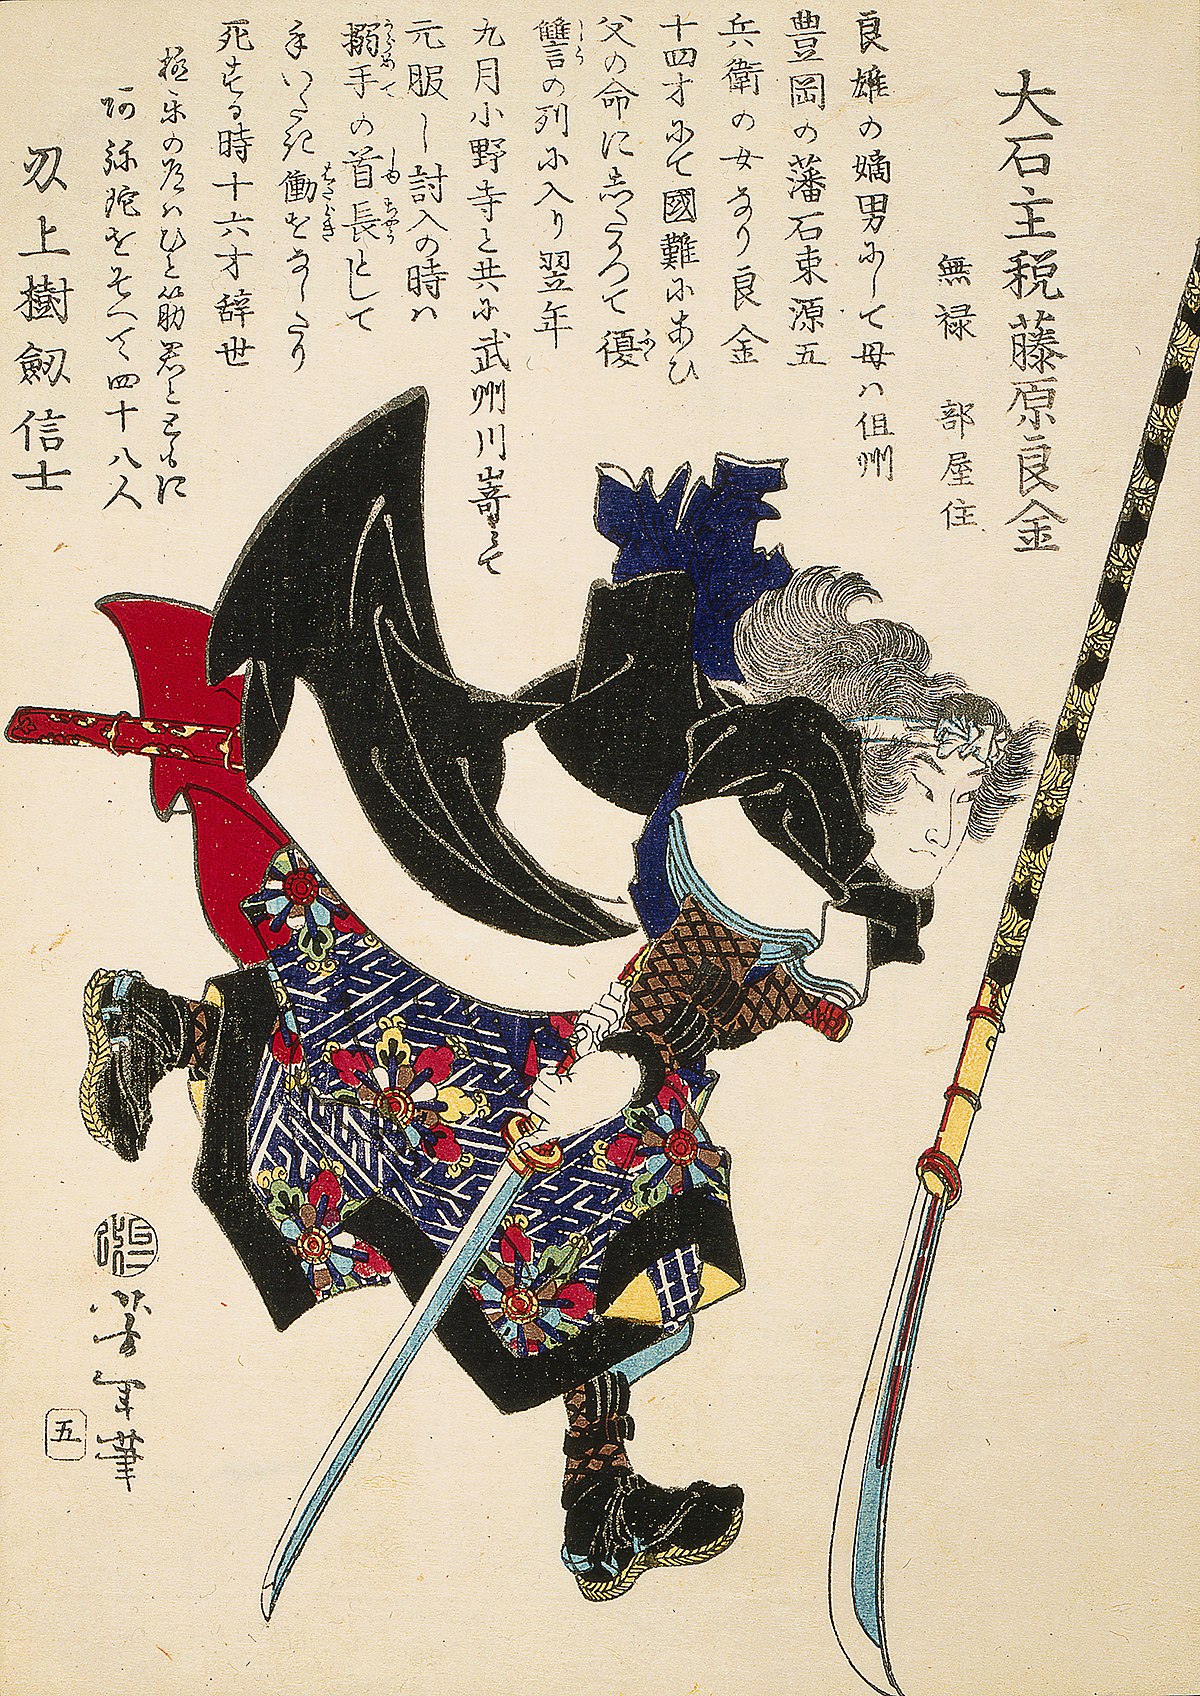 ファイル:Ronin, or masterless Samurai, lunging forward.jpg - Wikipedia